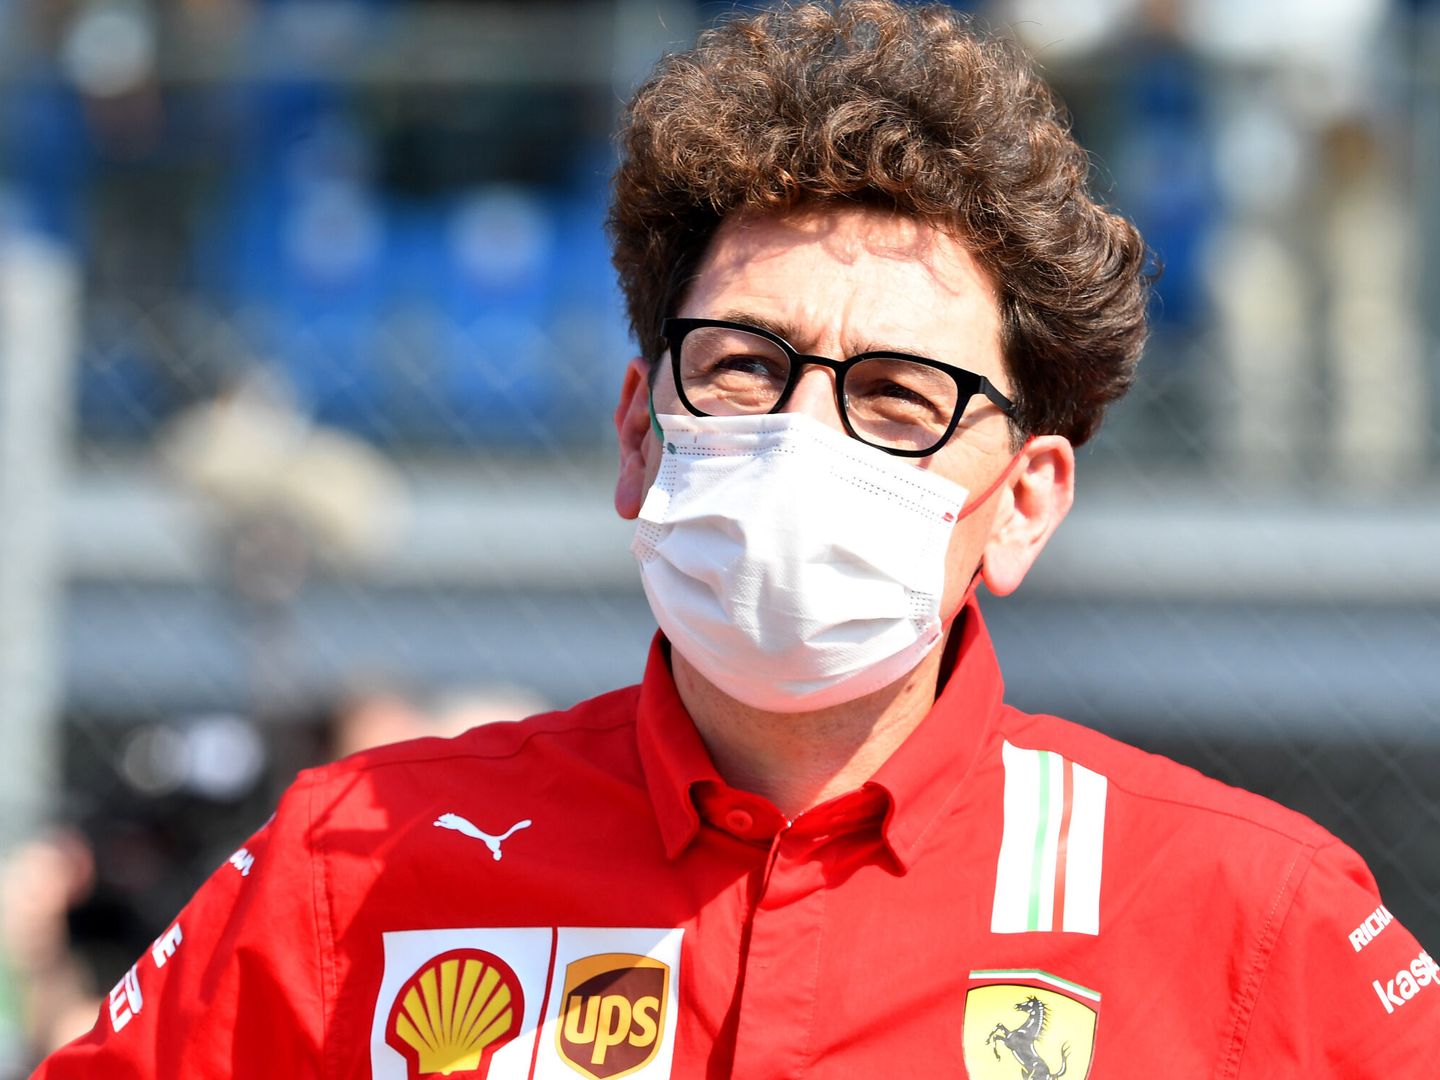 El máximo responsable de Ferrari está intentando introducir un nuevo modelo cultural en la gestión del equipo